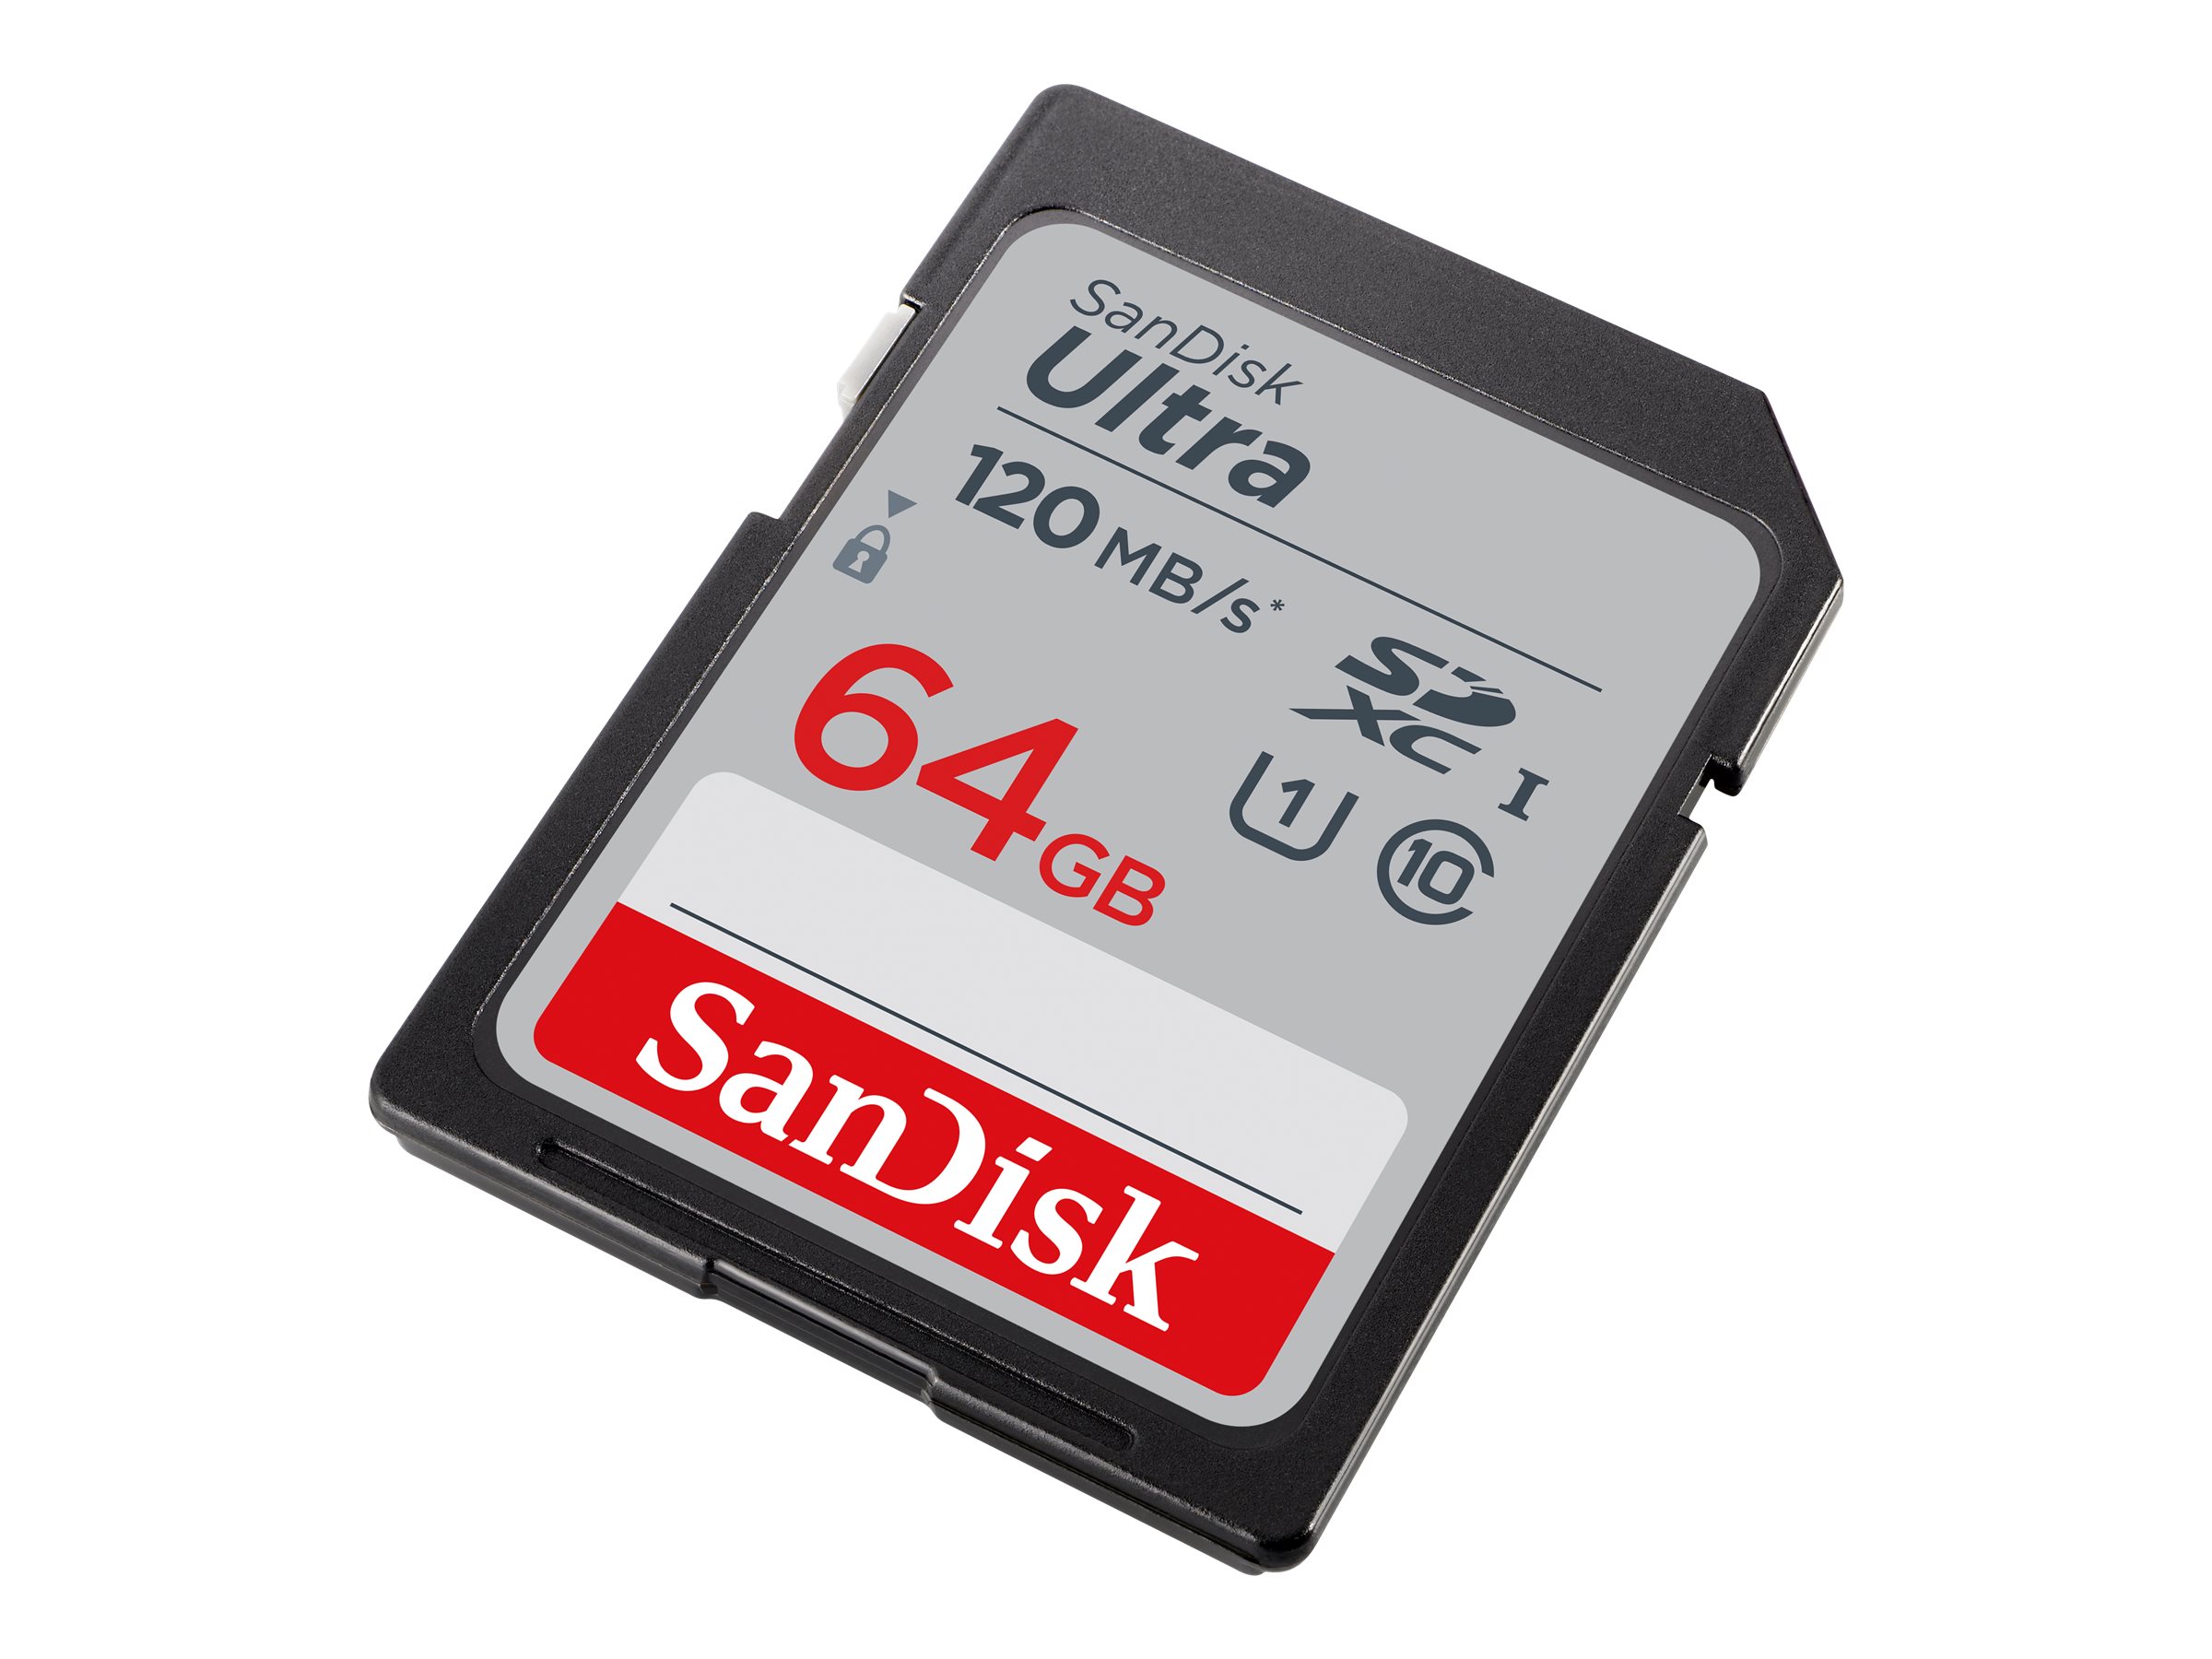 ADATA Premier UHS-I - flash memory card - 16 GB - microSDHC UHS-I